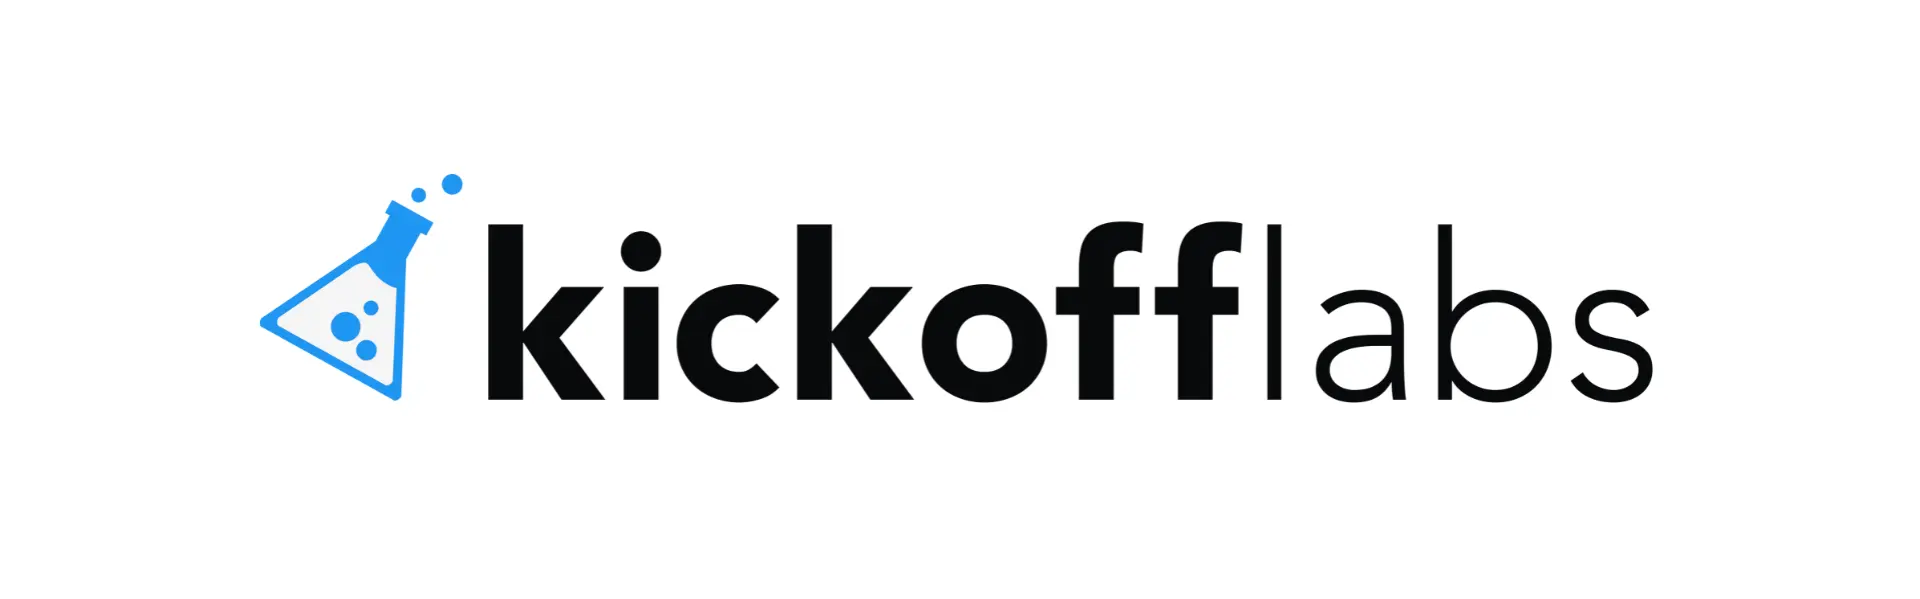 KickoffLabs logo